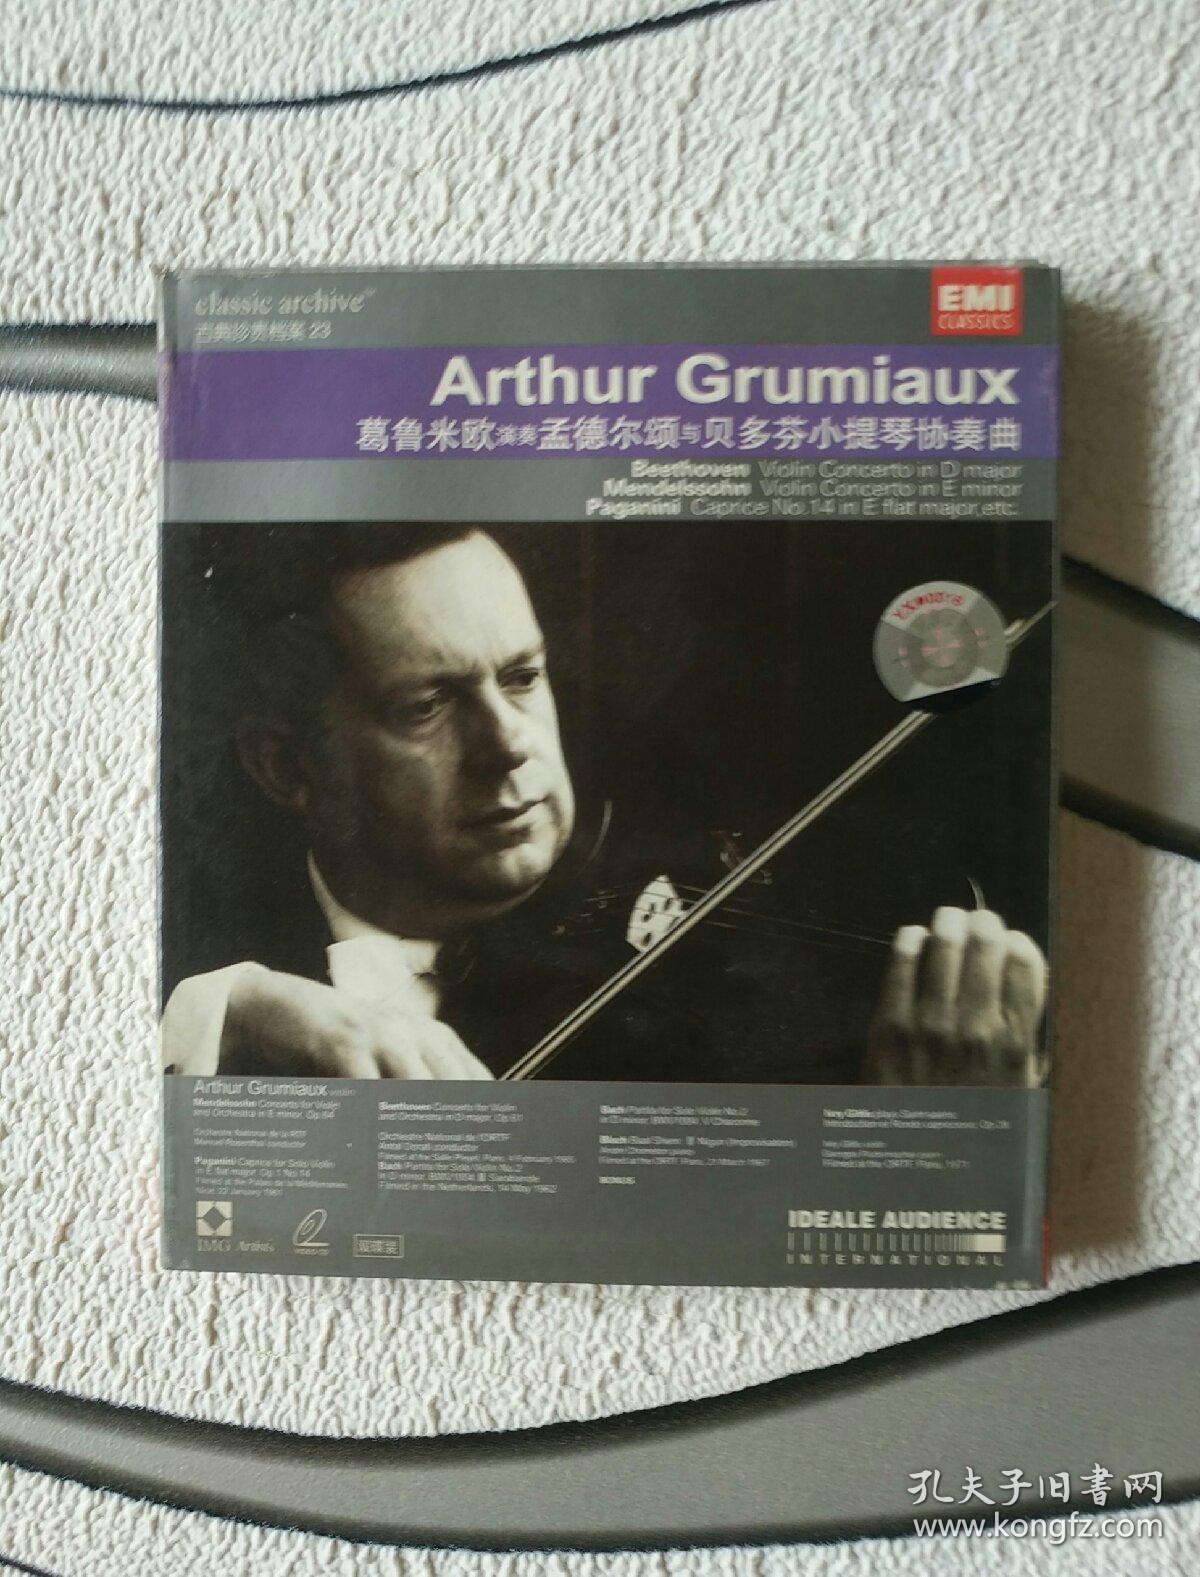 音乐碟《Arthur Grumiaux 葛鲁米欧演奏 孟德尔颂与贝多芬小提琴协奏曲 CD双碟装》正版盒装，本店所有游戏碟只走快递！家中东橱南架二层，因本人不懂游戏碟，如图自鉴，2021年3月25日